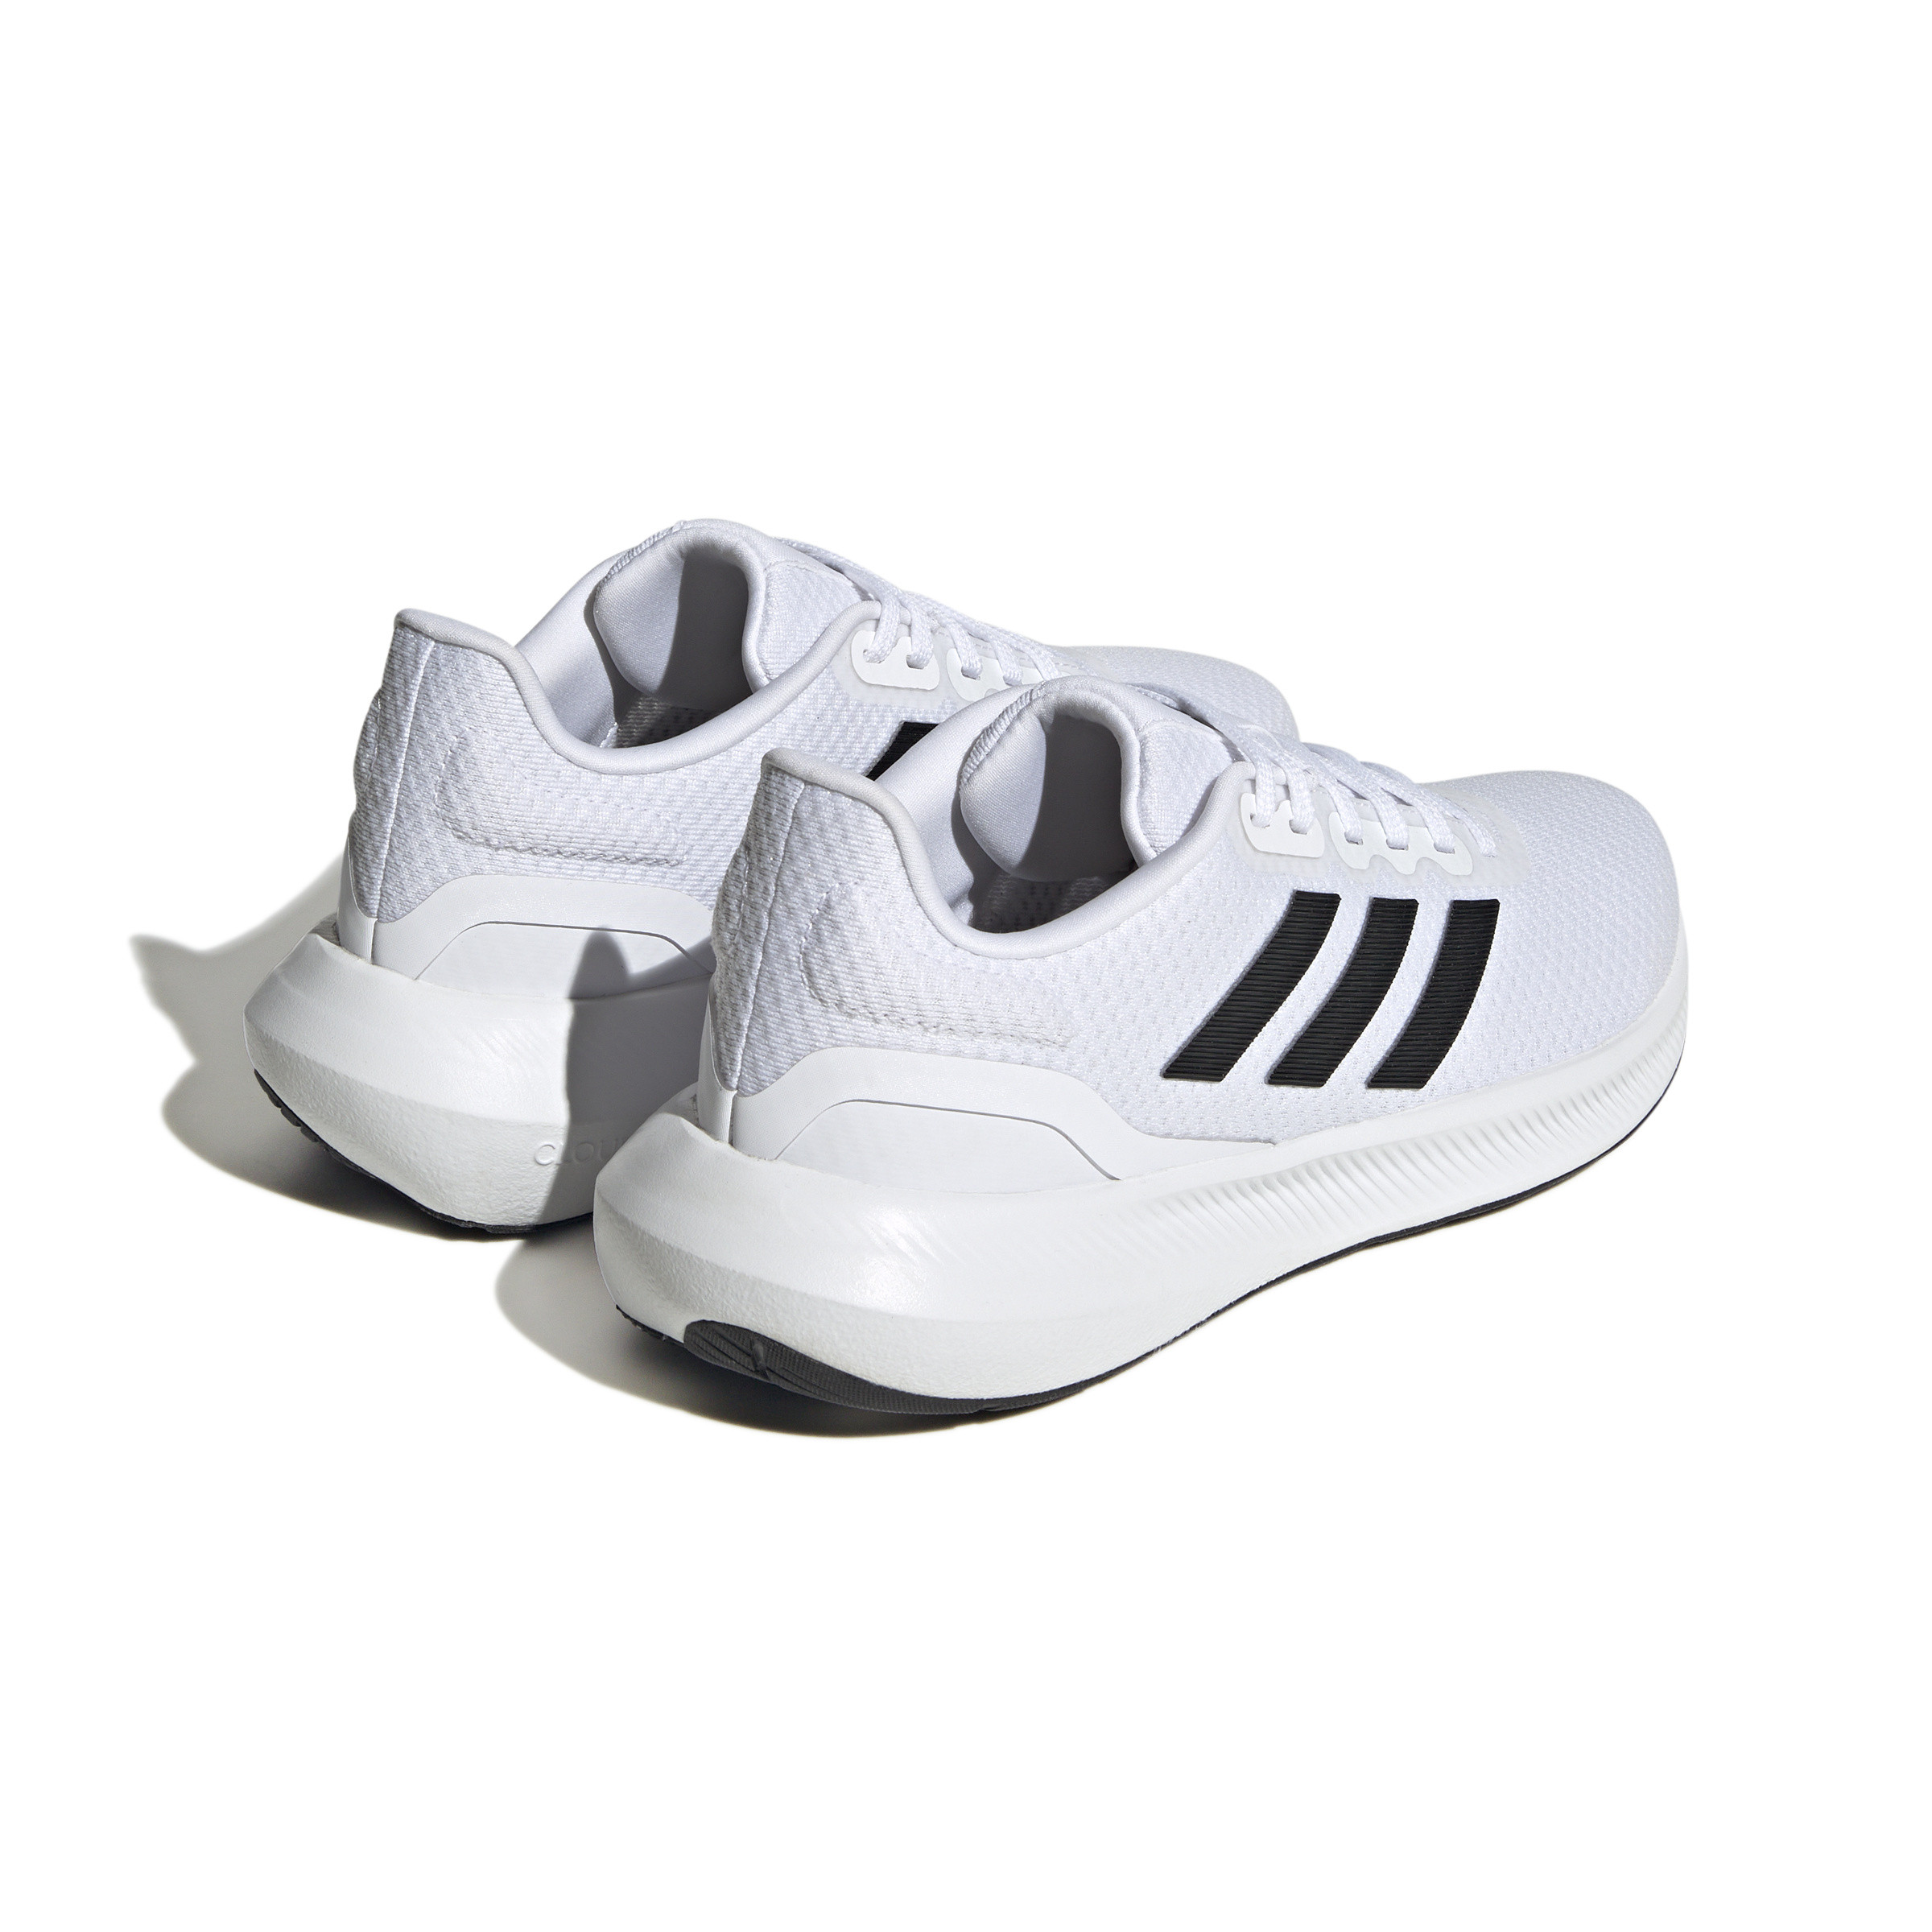 Adidas - Scarpe Runfalcon 3, Bianco, large image number 2